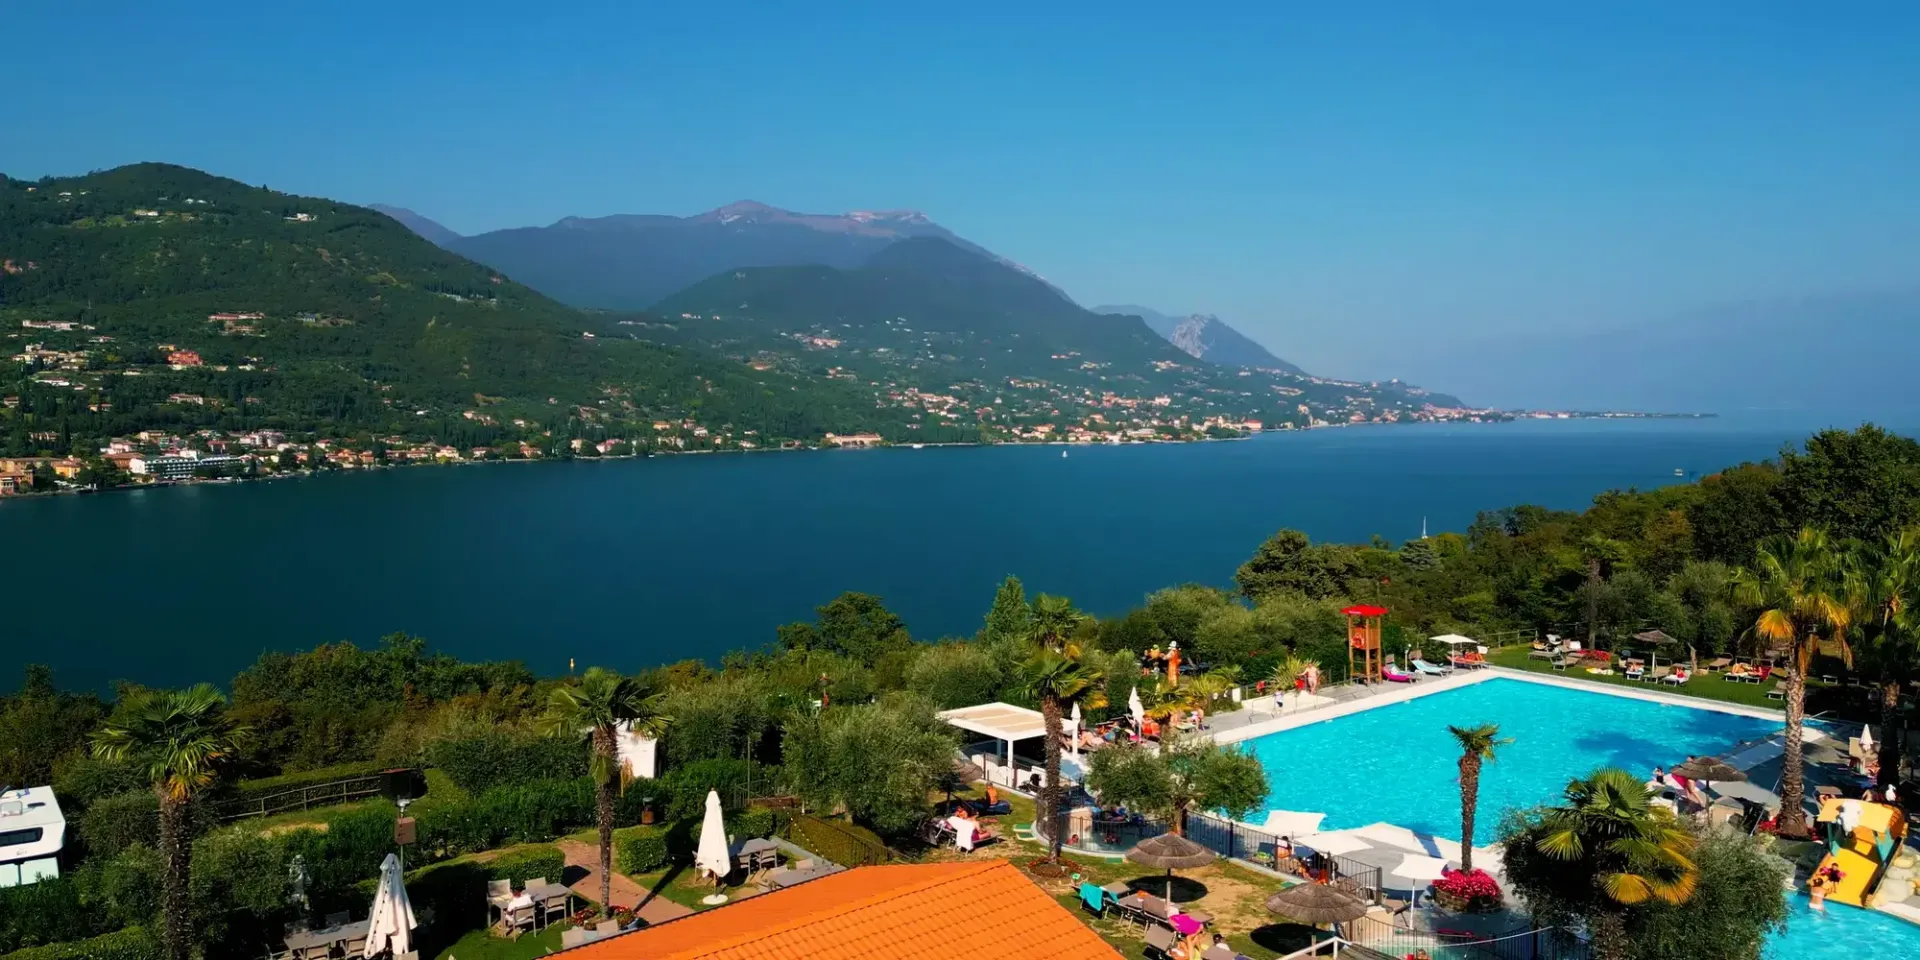 Pools overlooking Lake Garda